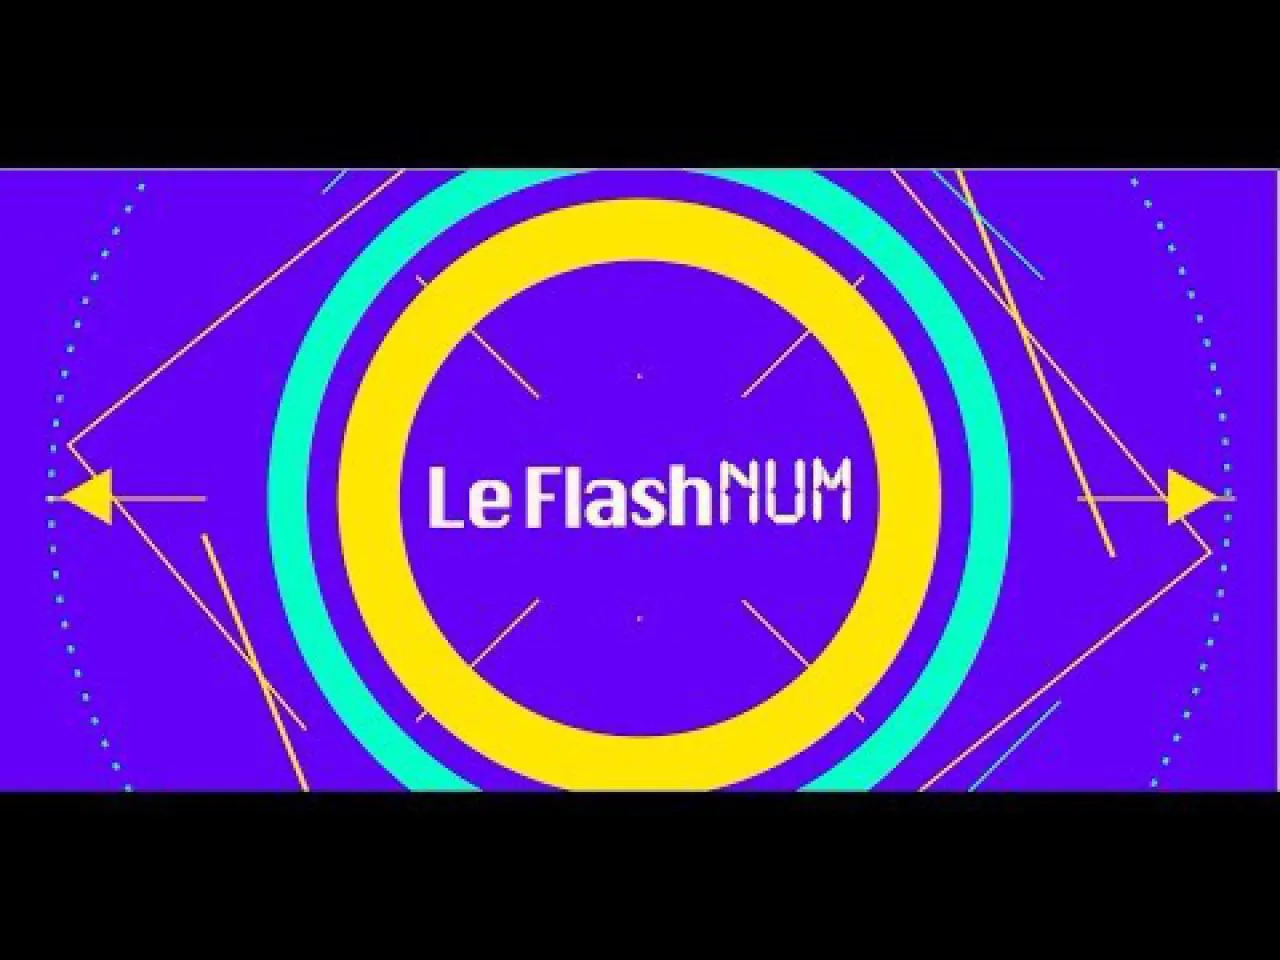 Flashnum #10